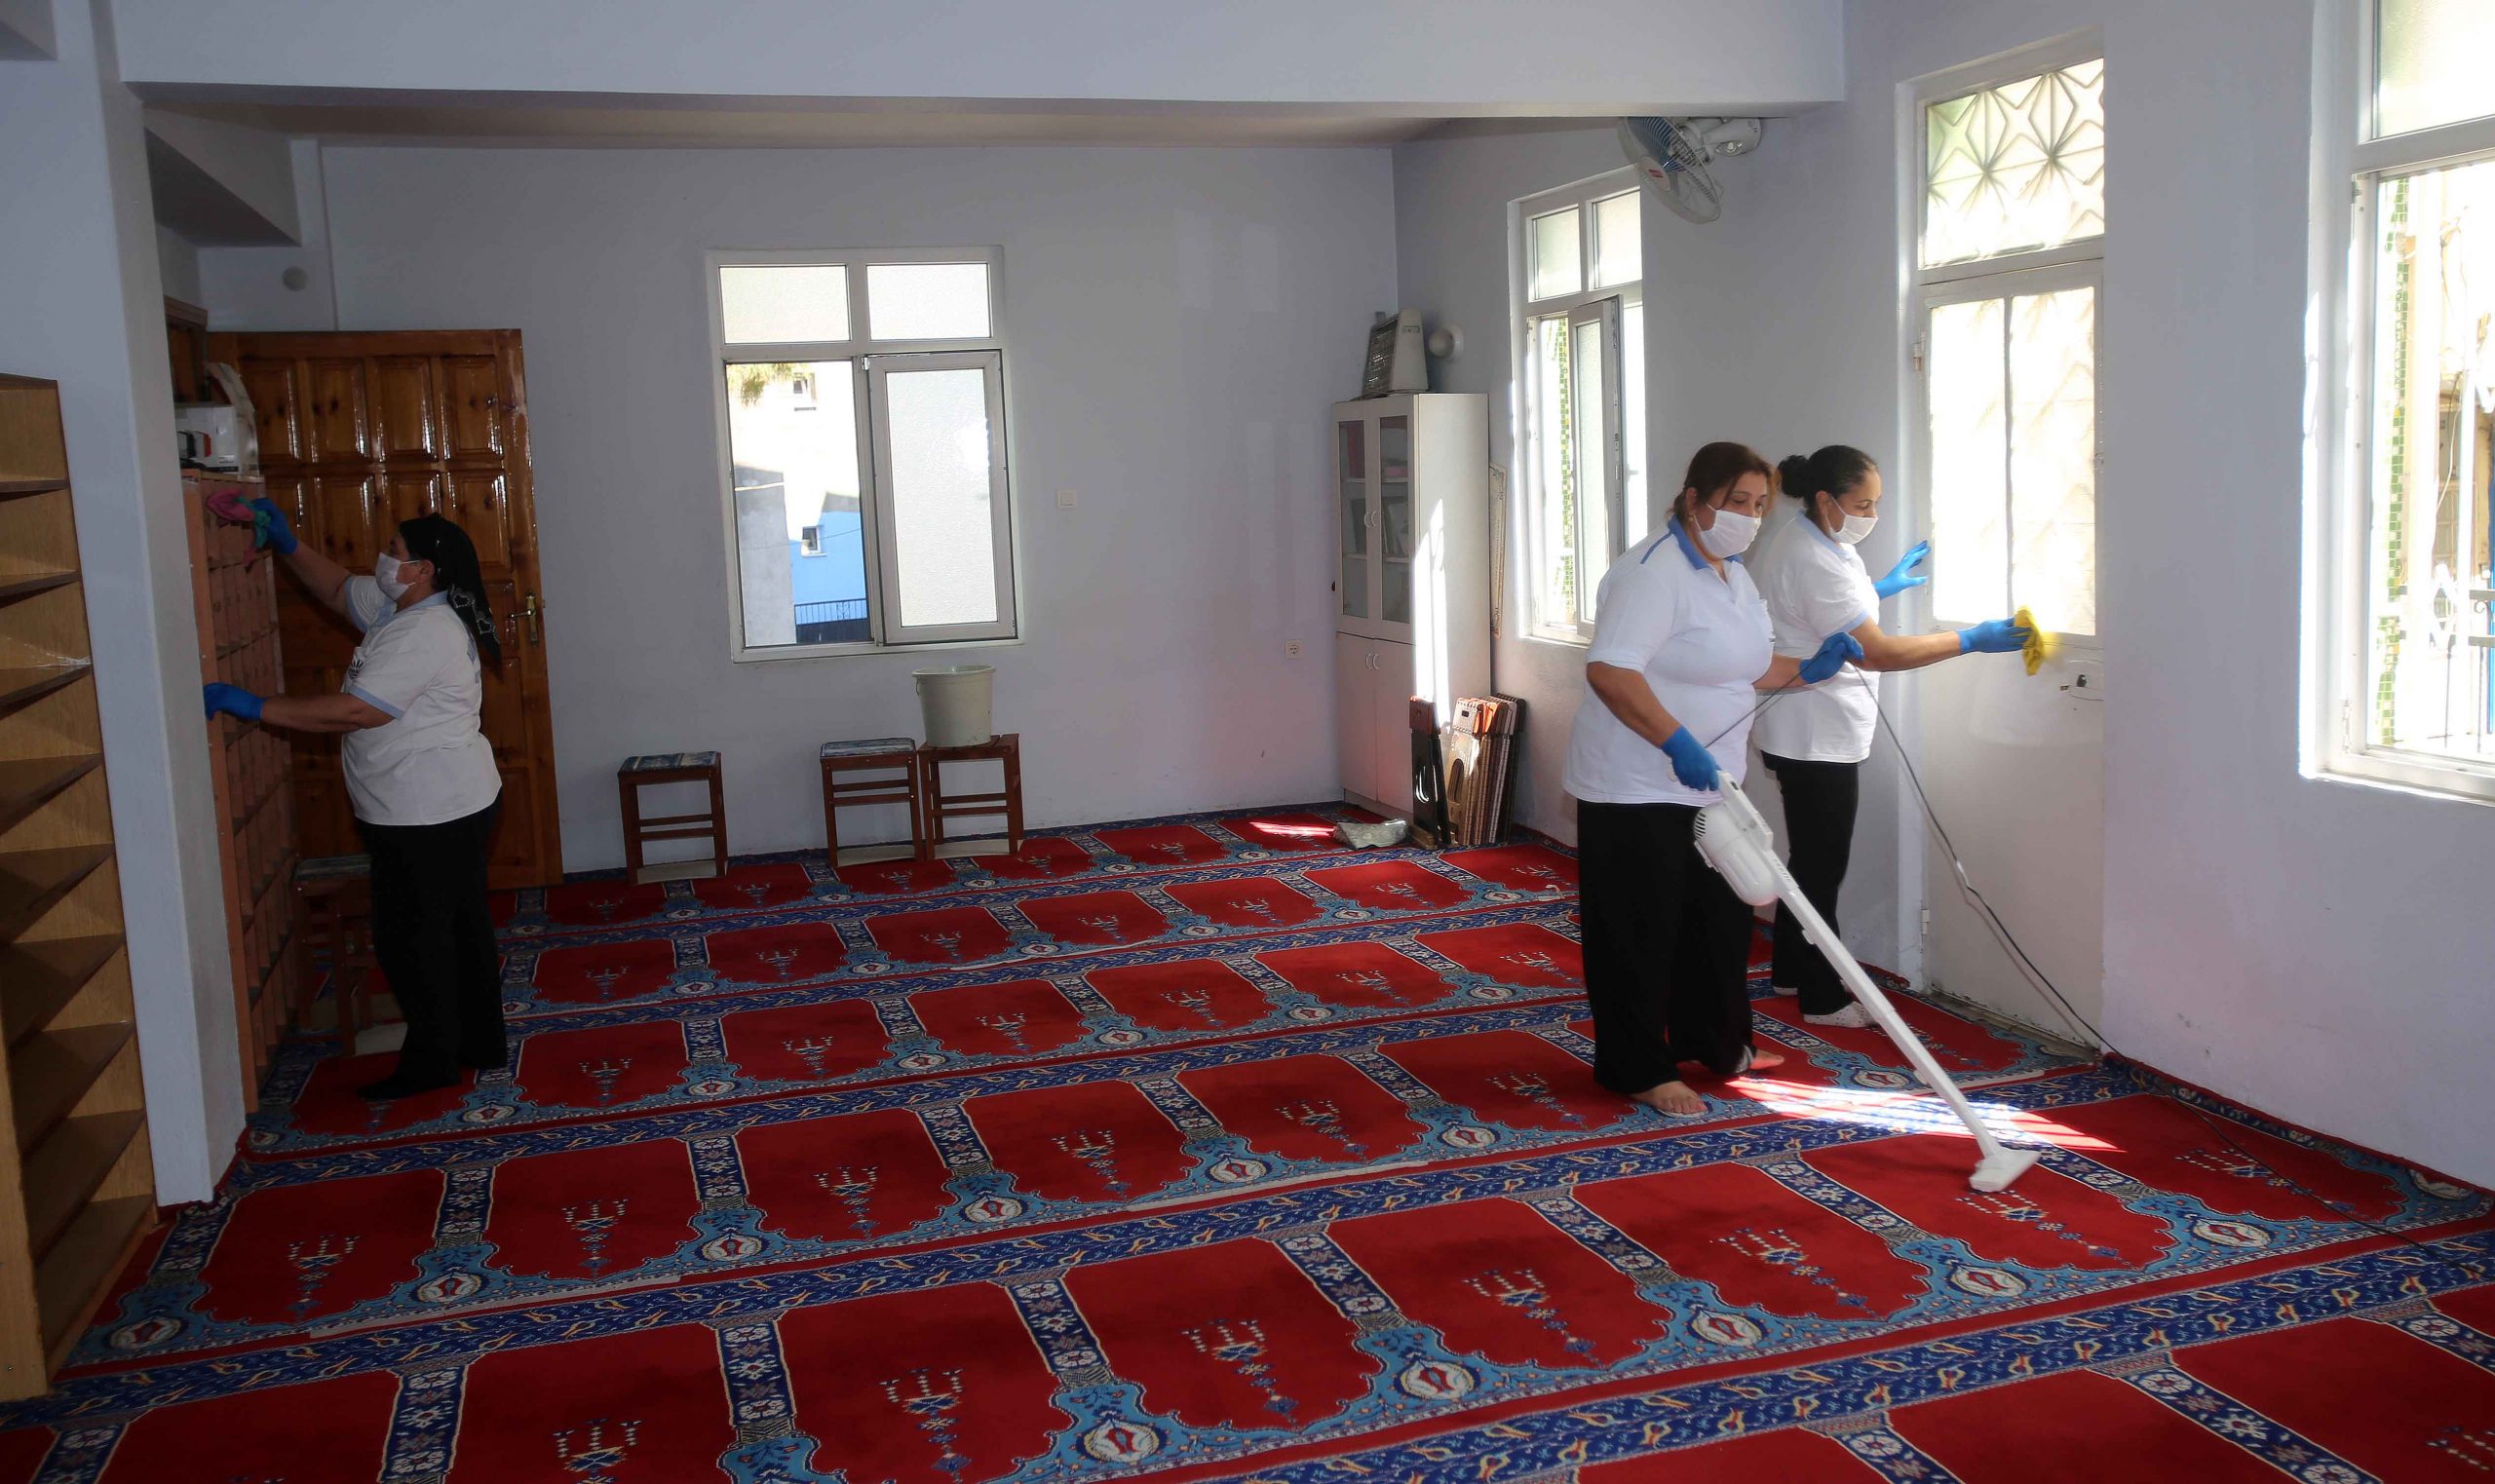 Karabağlar’da camilere bayram temizliği